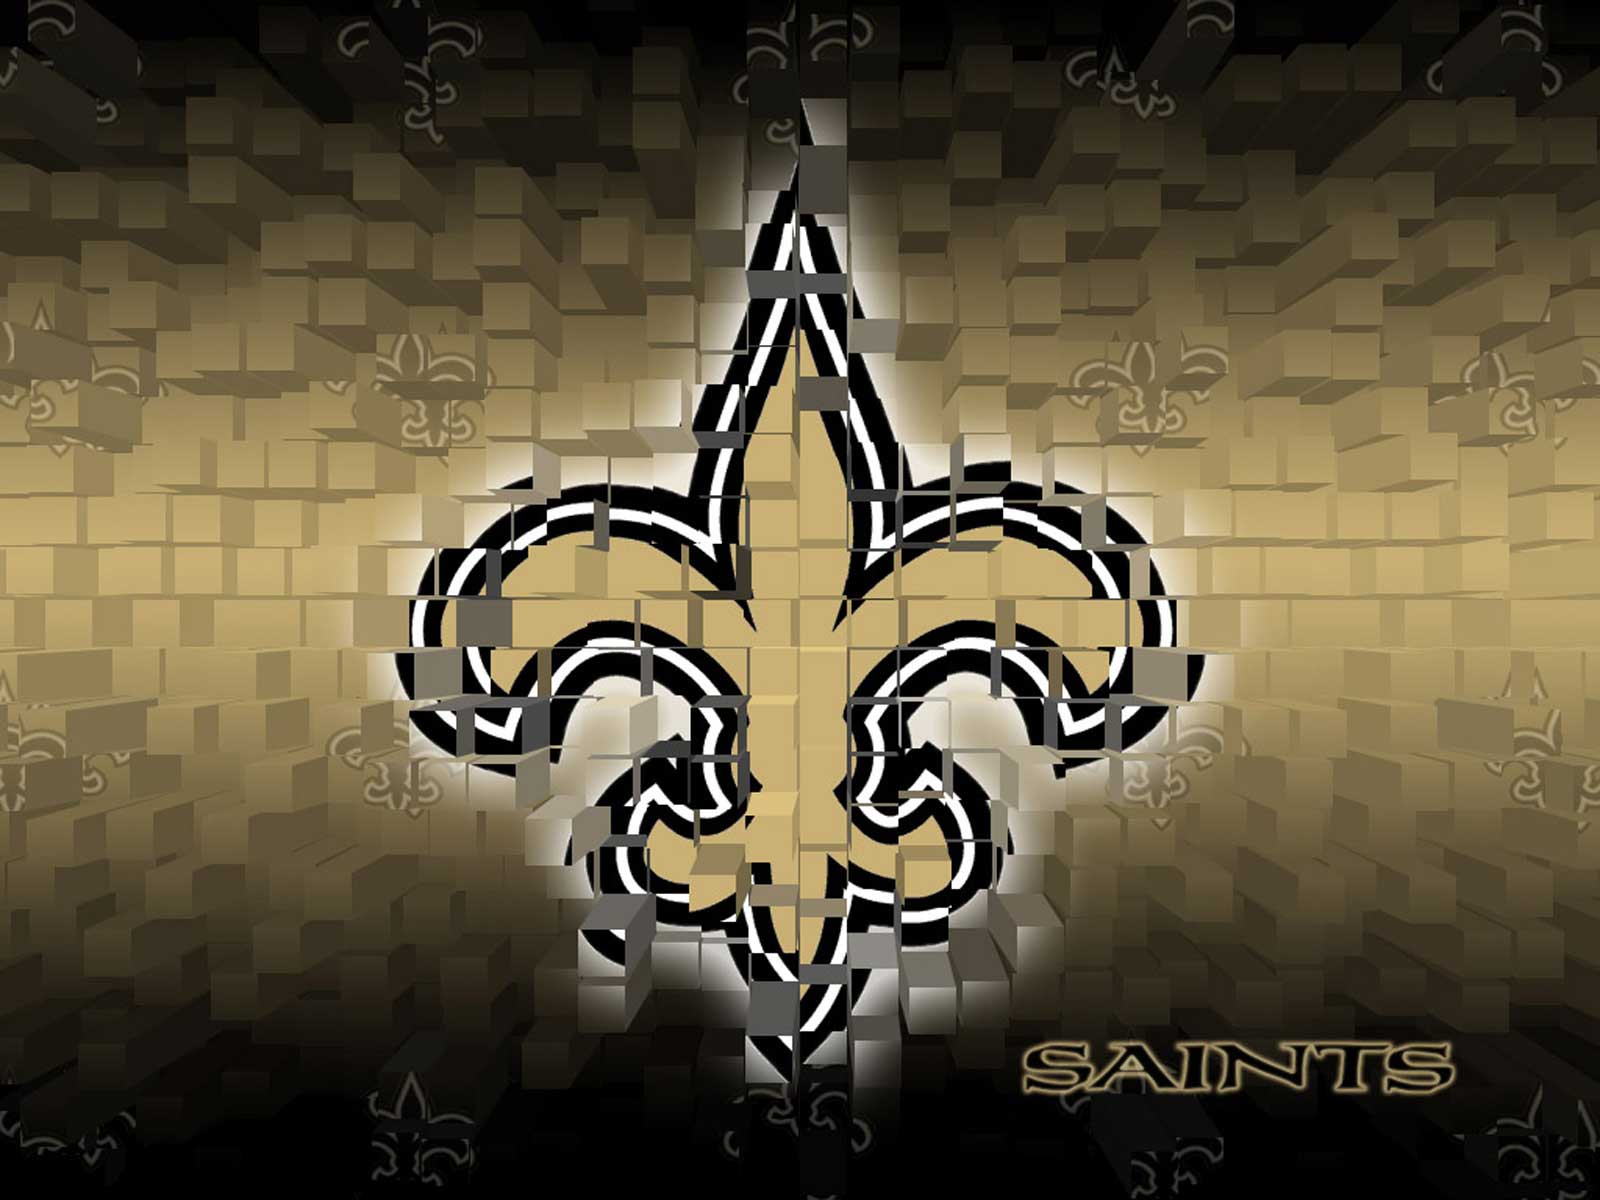 New Orleans Saints Wallpaper Desktop